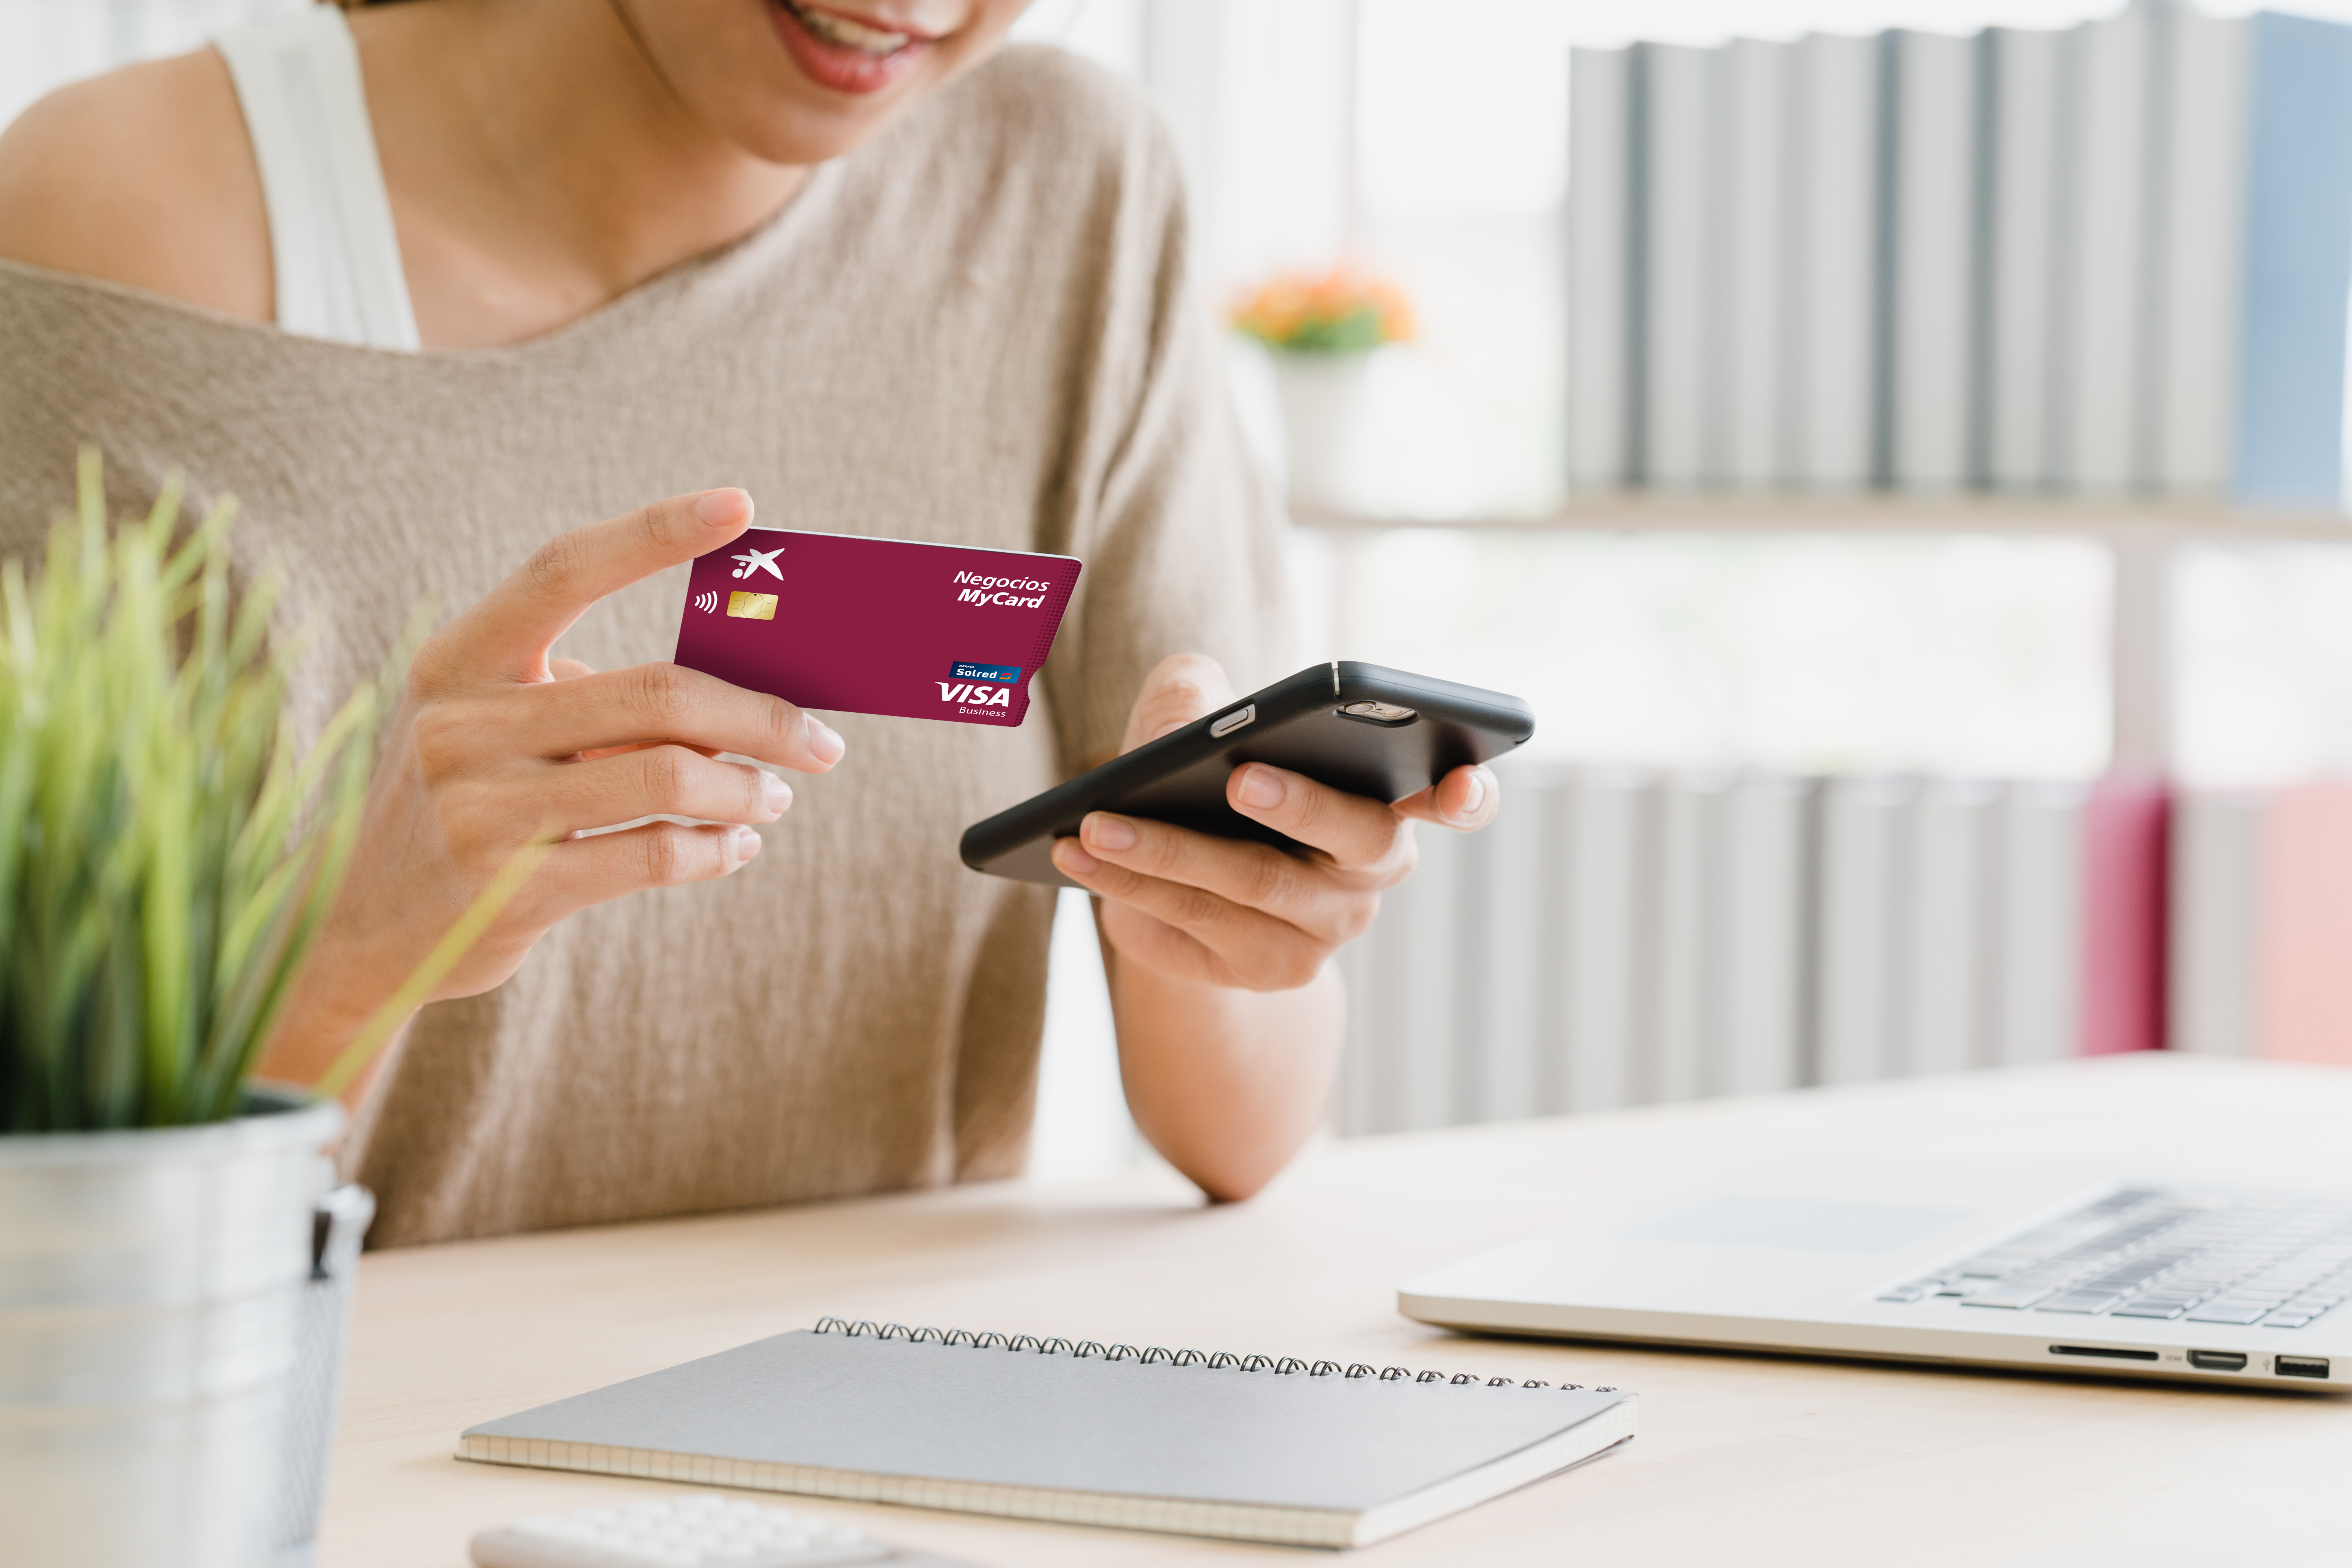 Preocupado luego estar impresionado CaixaBank lanza la tarjeta 'MyCard' Negocios para el colectivo de autónomos